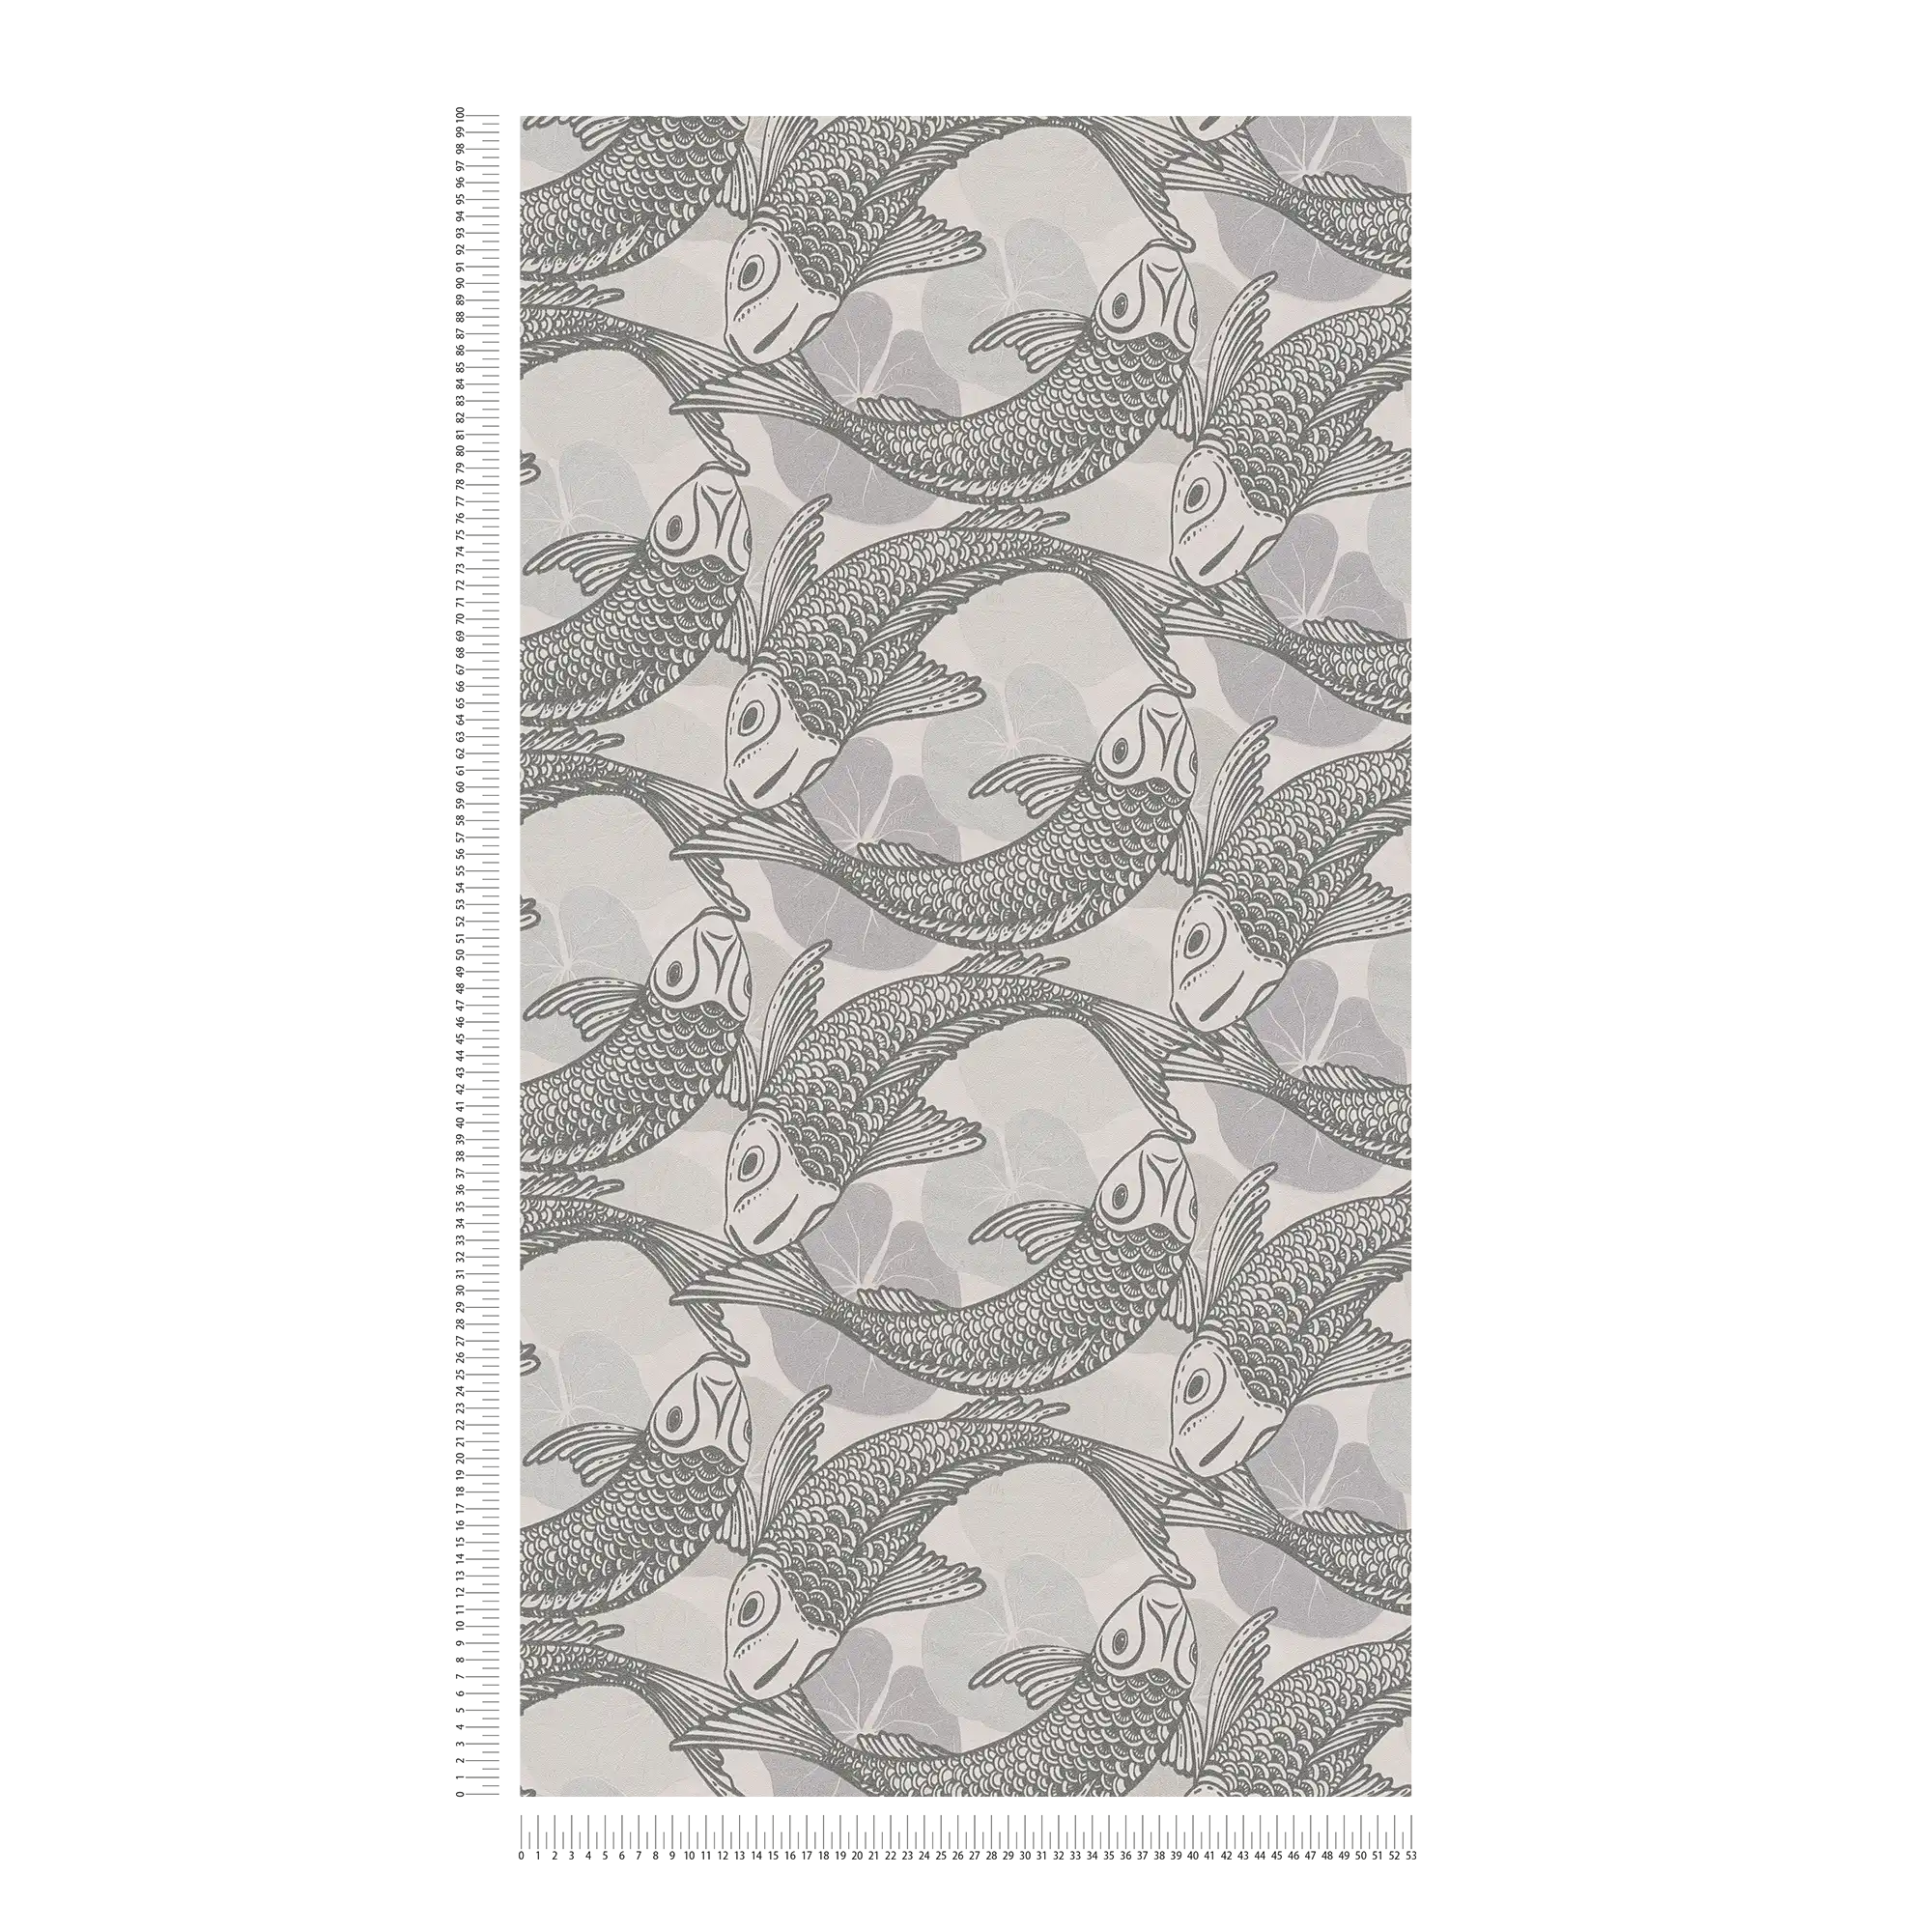             Carta da parati koi in stile asiatico con effetto metallizzato - beige, grigio, metallizzato
        